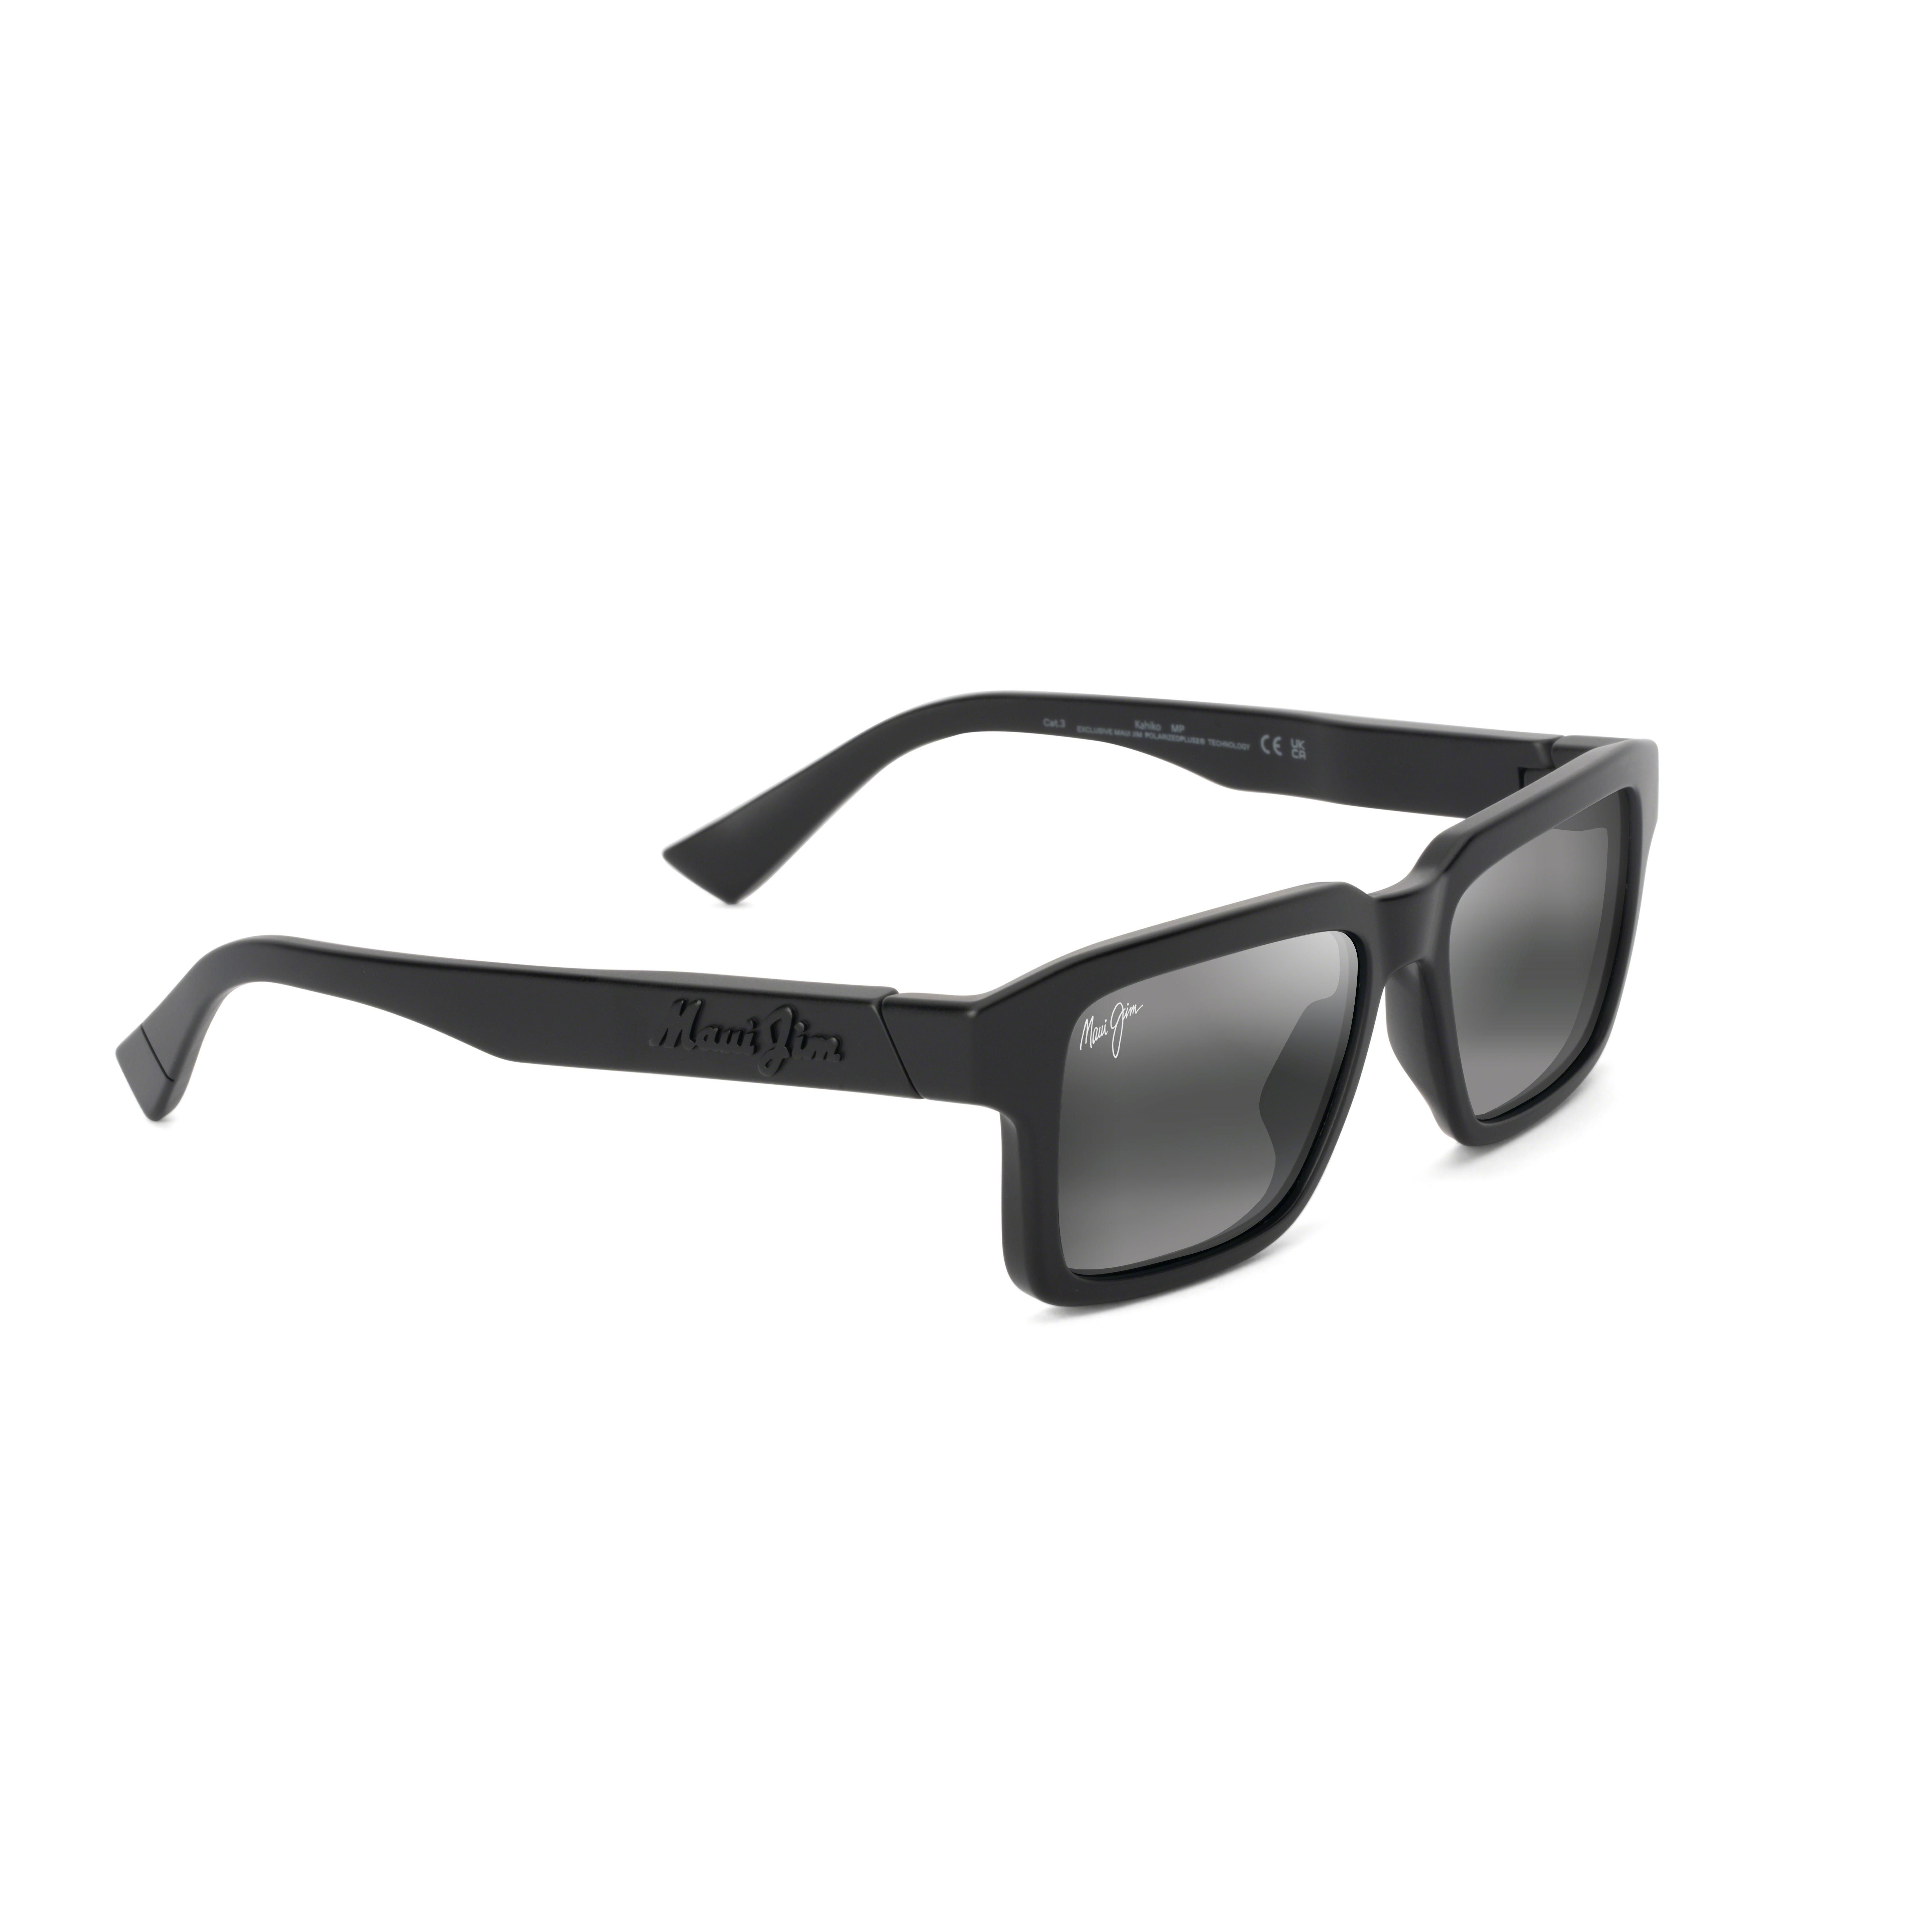 KAHIKO 635 Rectangle Sunglasses 02 - size 53